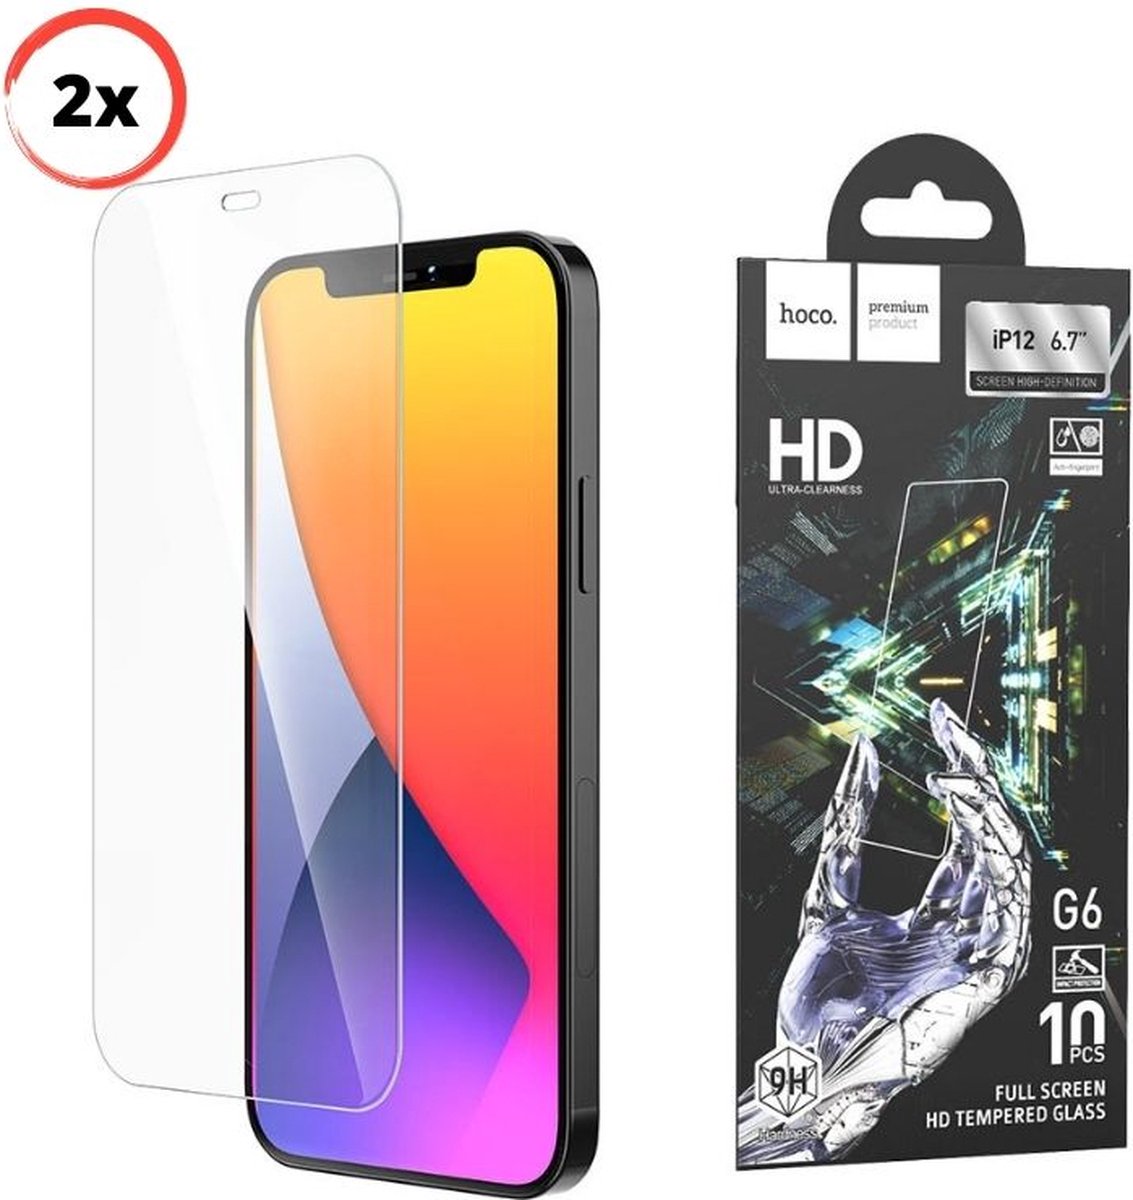 2x Screenprotector iPhone 12 Pro Max - Gorilla Glas - 6.7 Inch